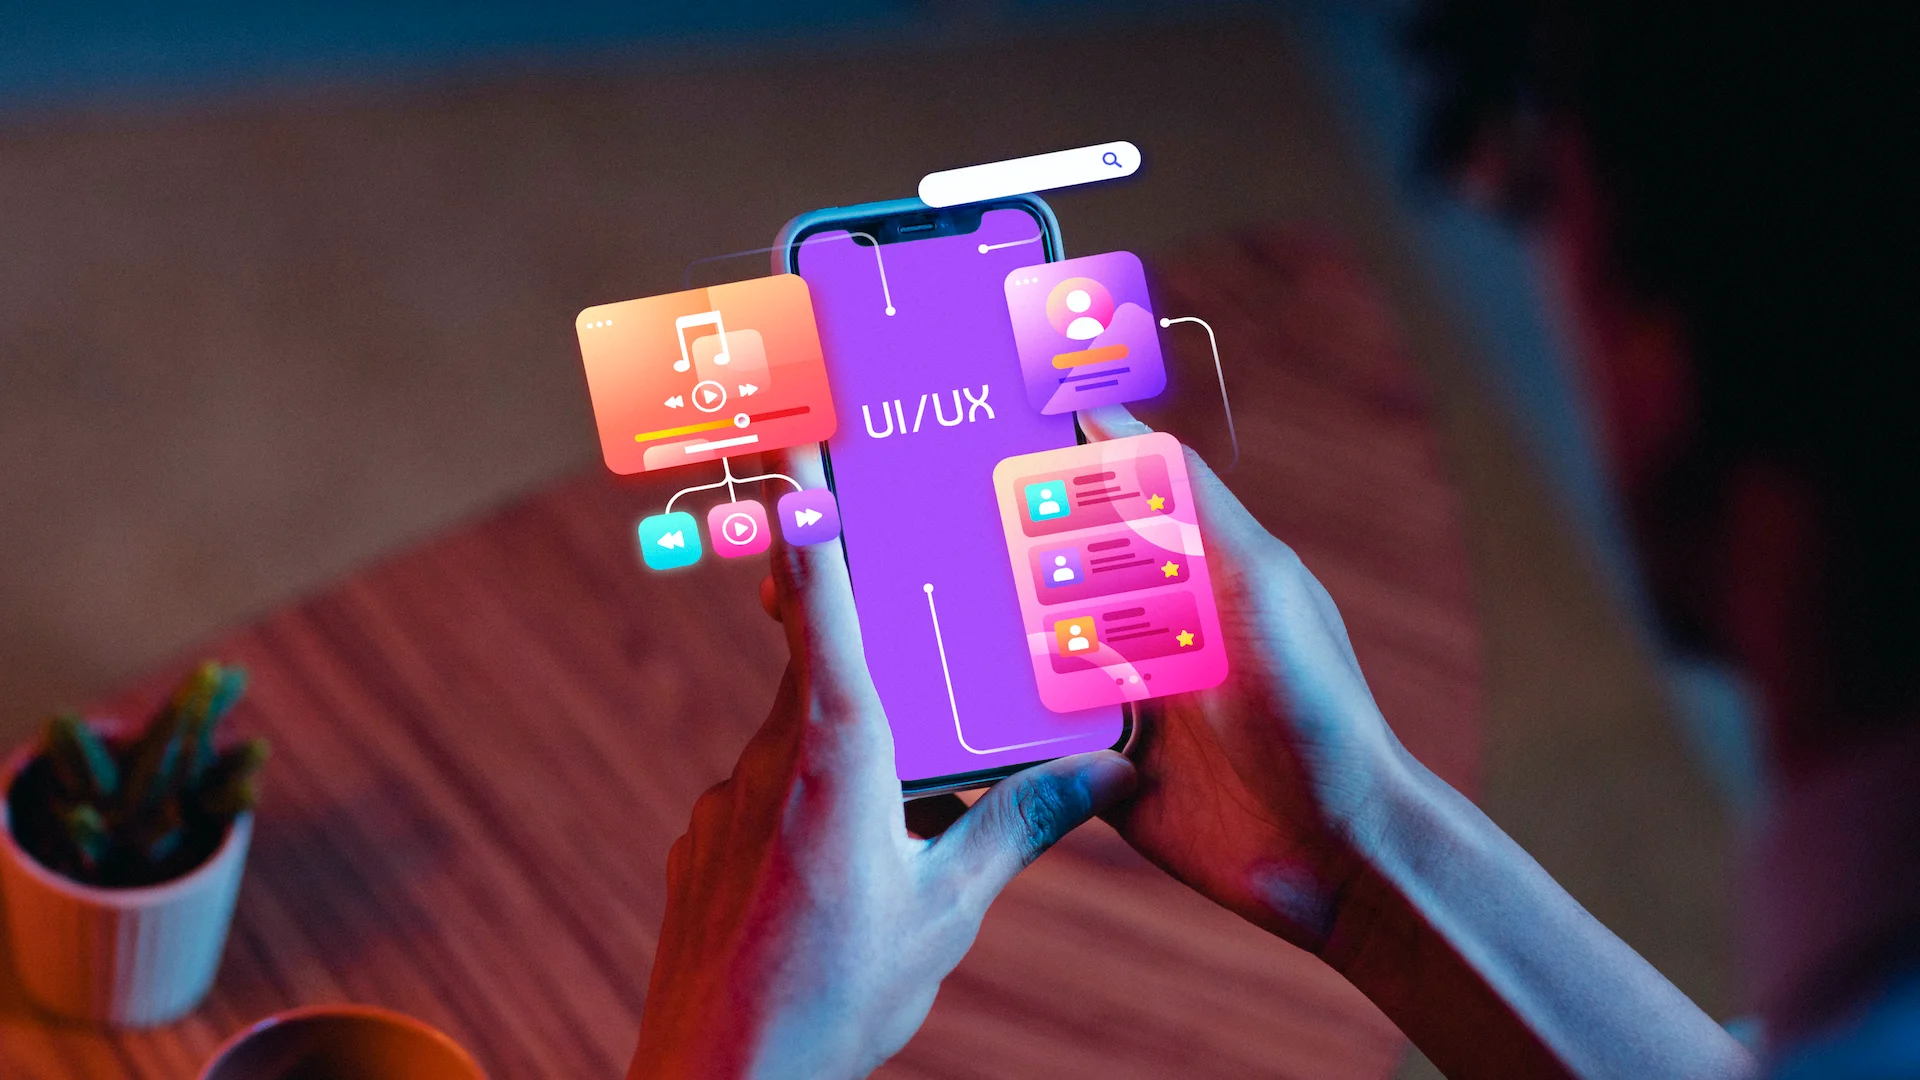 Mobile UI UX design trends